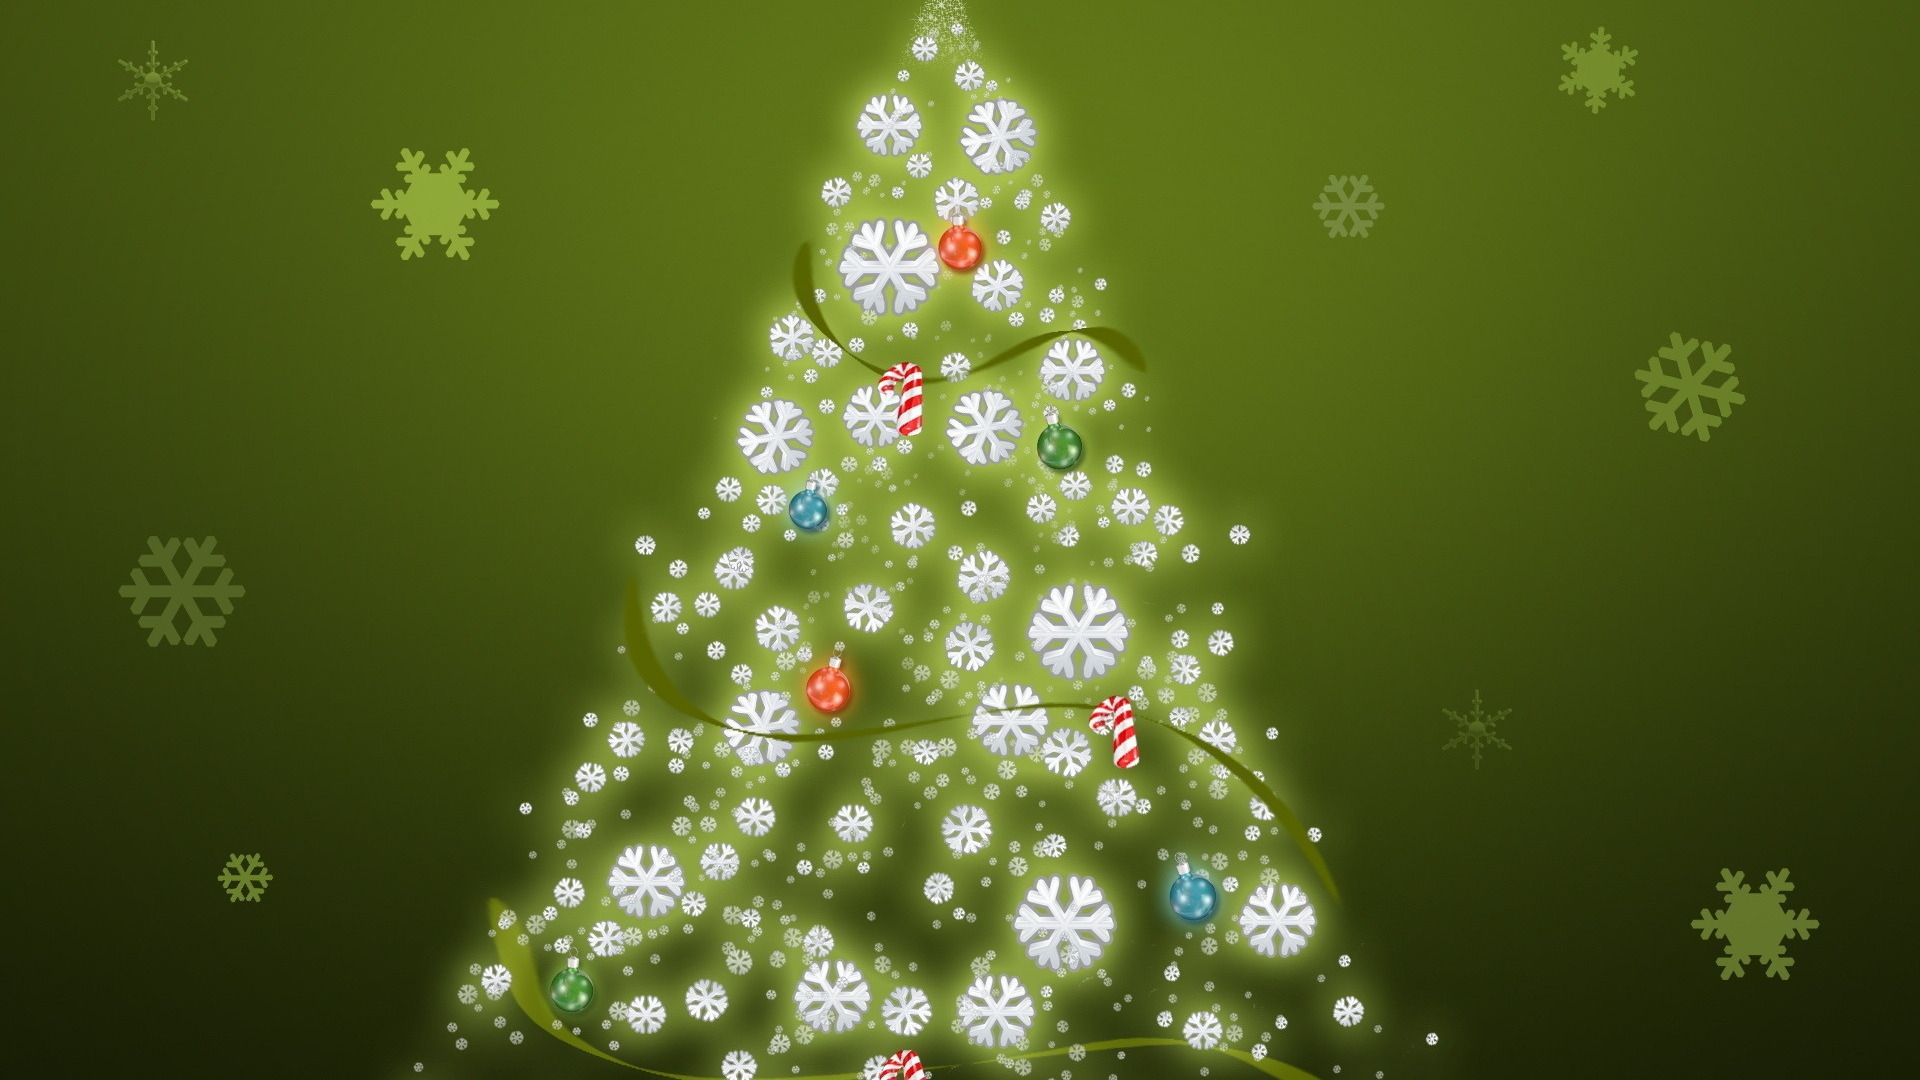 Christmas tree wallpaper. Christmas tree wallpaper, Simple christmas tree, Christmas tree background